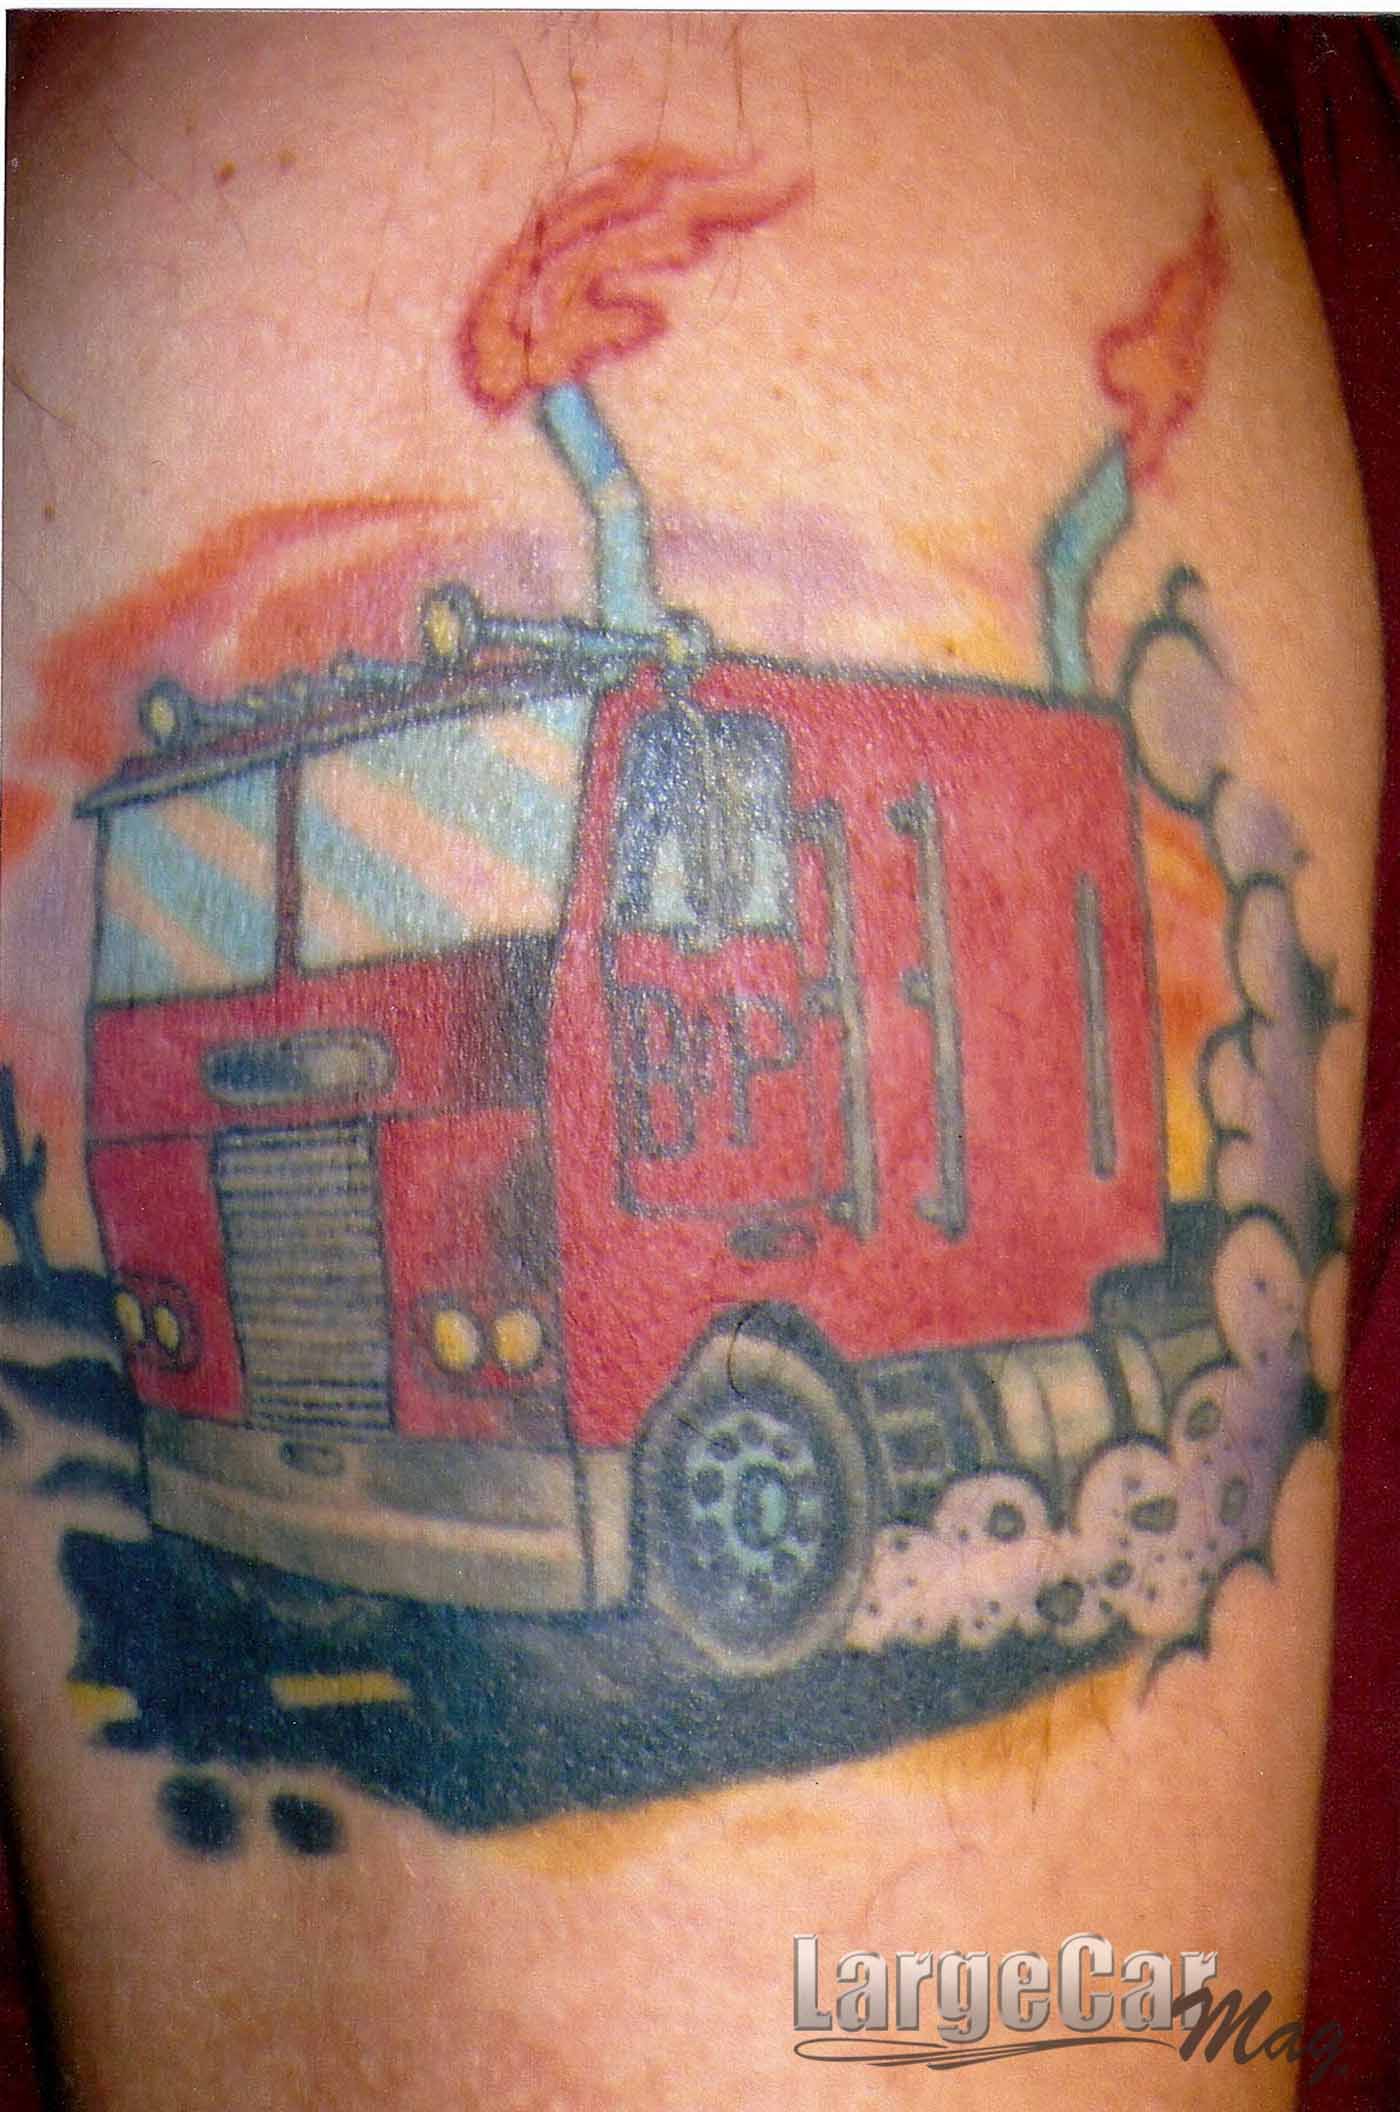 Truckin’ Tattoo December 2013